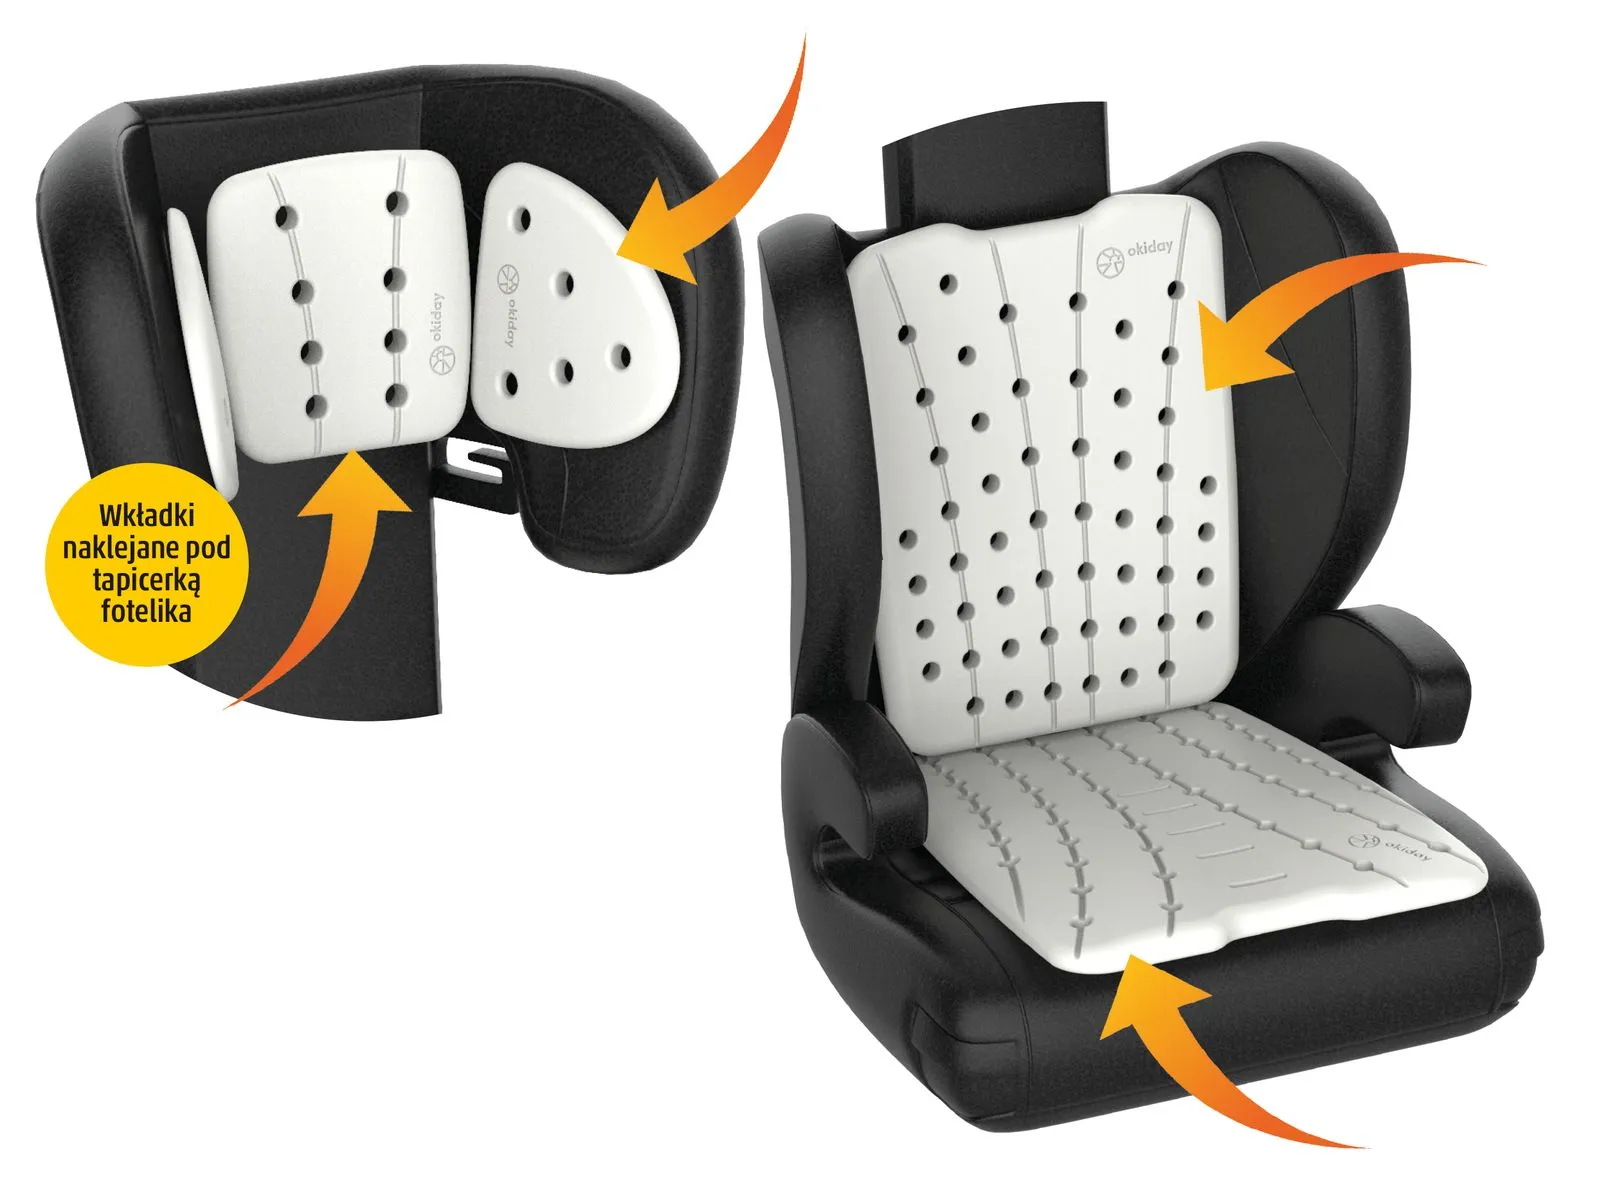 Zestaw Okiday Basic: zagłówek, oparcie, siedzisko akcesoria podróżne do fotelika samochodowego